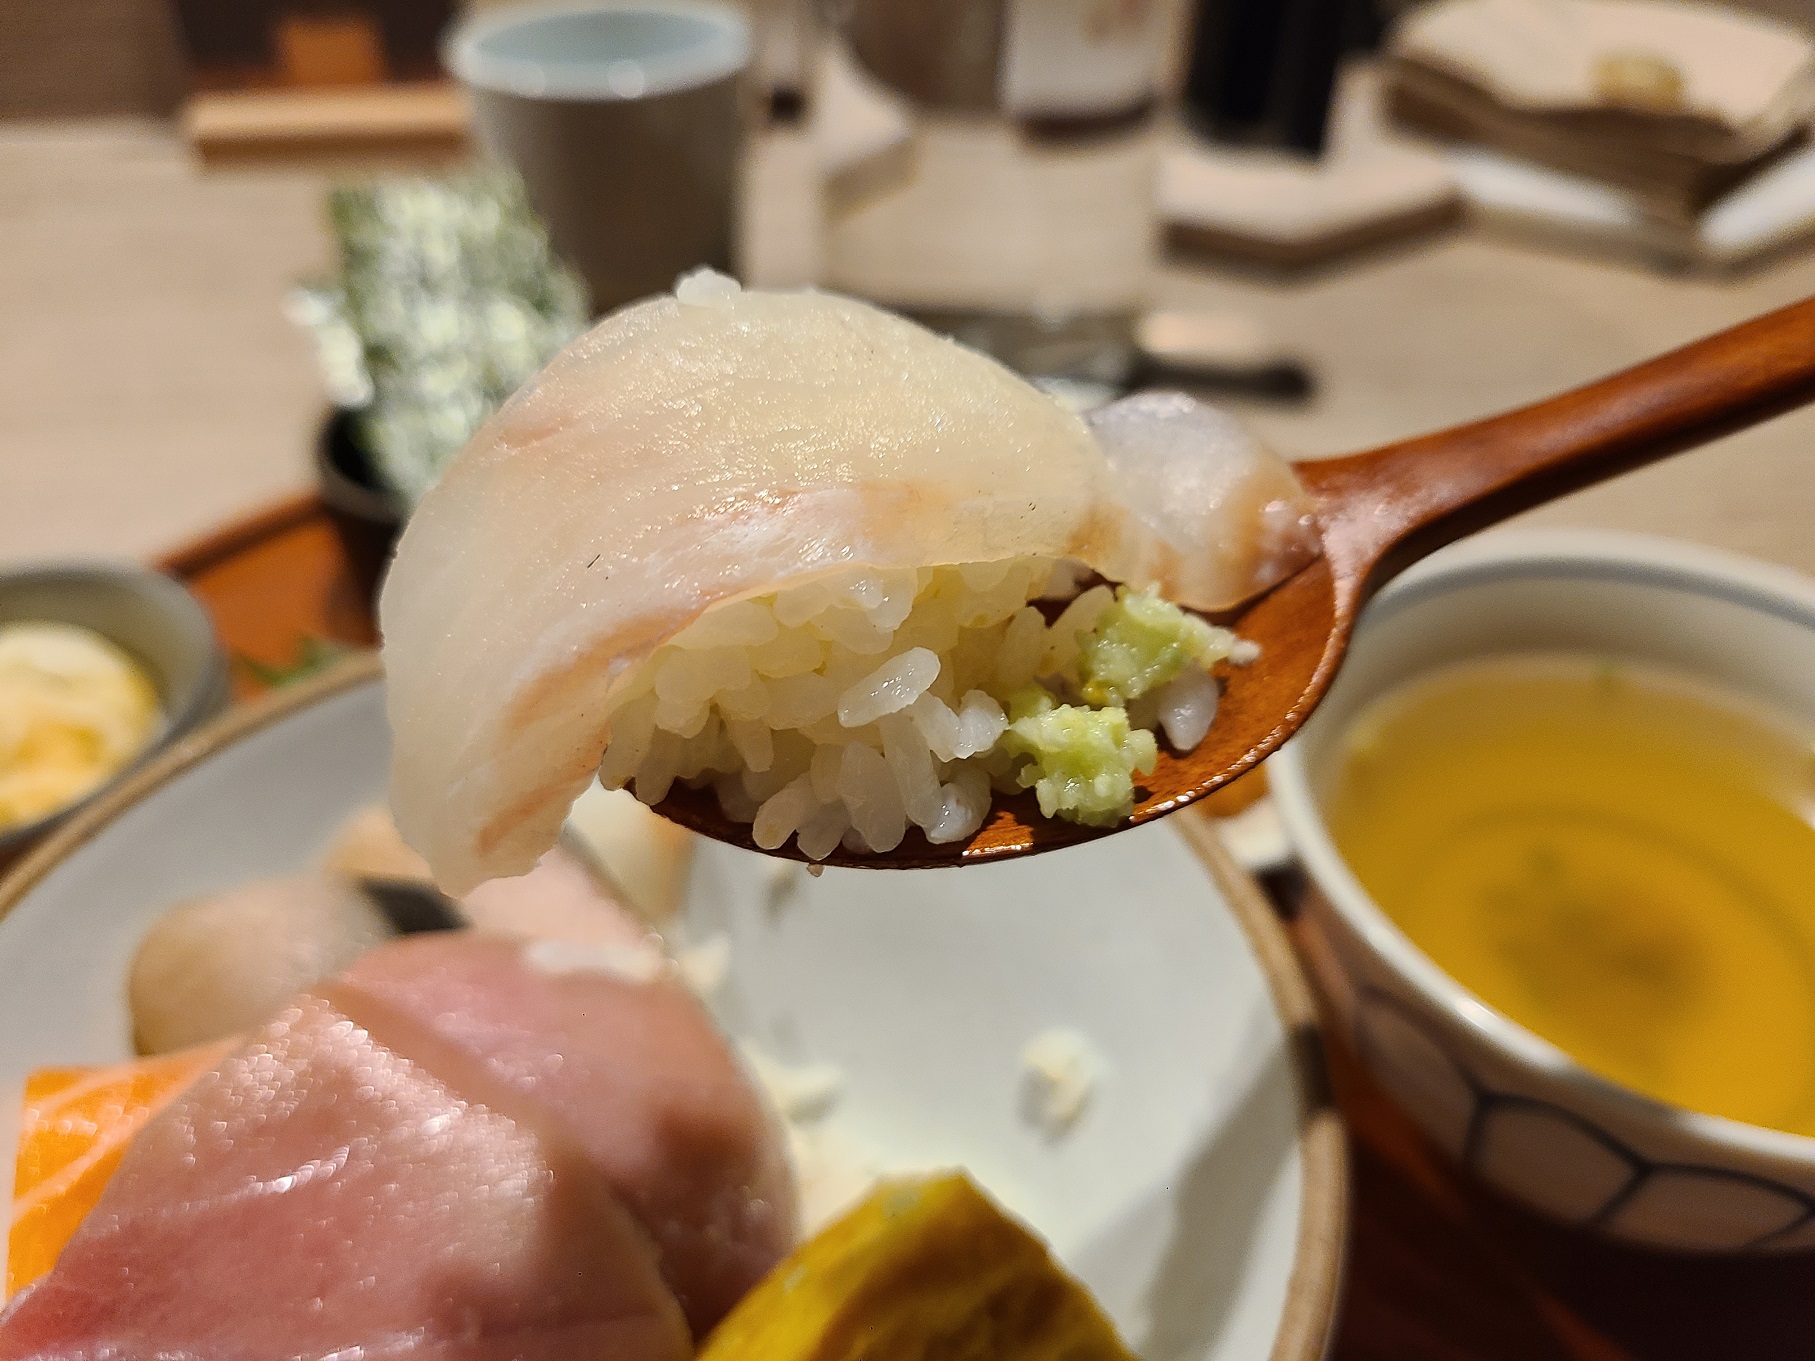 간이된 밥 위에 사장님표 와사비와 생선을 올려 초밥처럼 만들어 놓은 모습